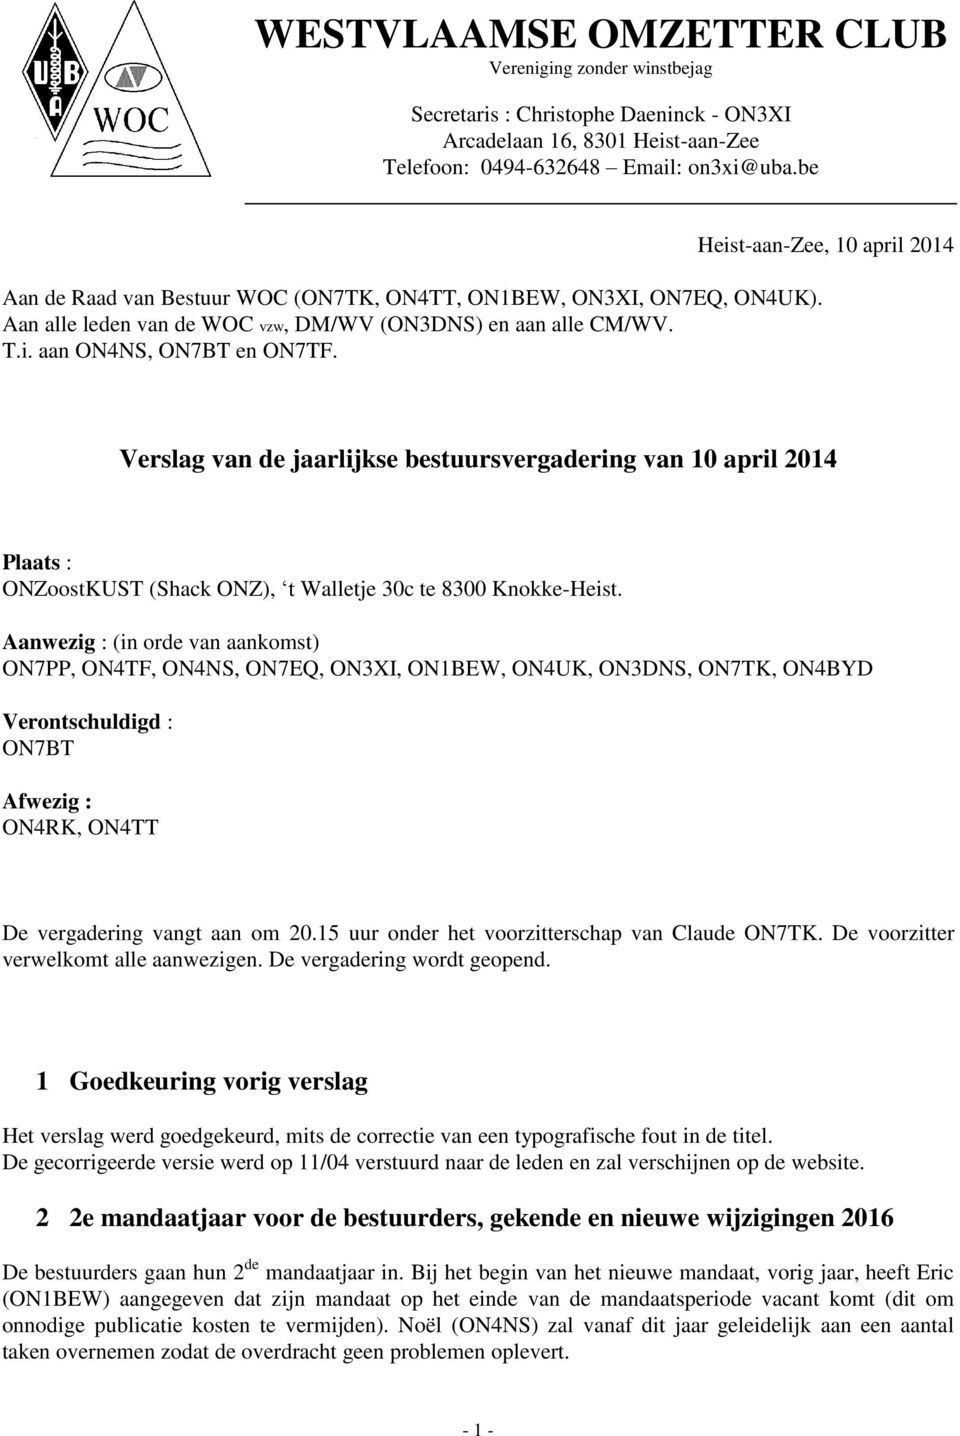 Heist-aan-Zee, 10 april 2014 Verslag van de jaarlijkse bestuursvergadering van 10 april 2014 Plaats : ONZoostKUST (Shack ONZ), t Walletje 30c te 8300 Knokke-Heist.